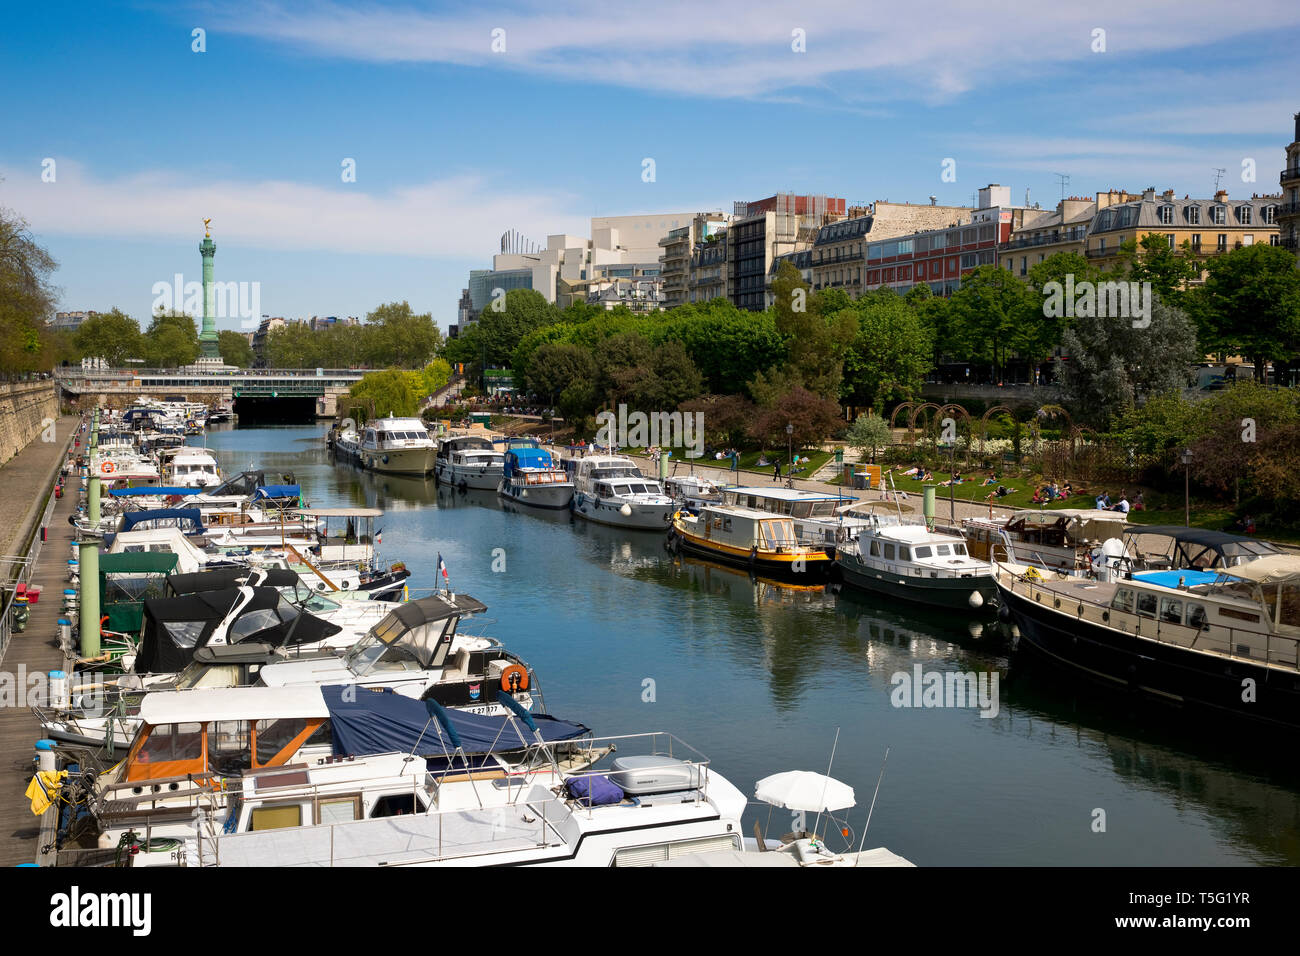 Bassin de l' Arsenal also known as the Port de l'Arsenal near Bastille, Paris, France Stock Photo